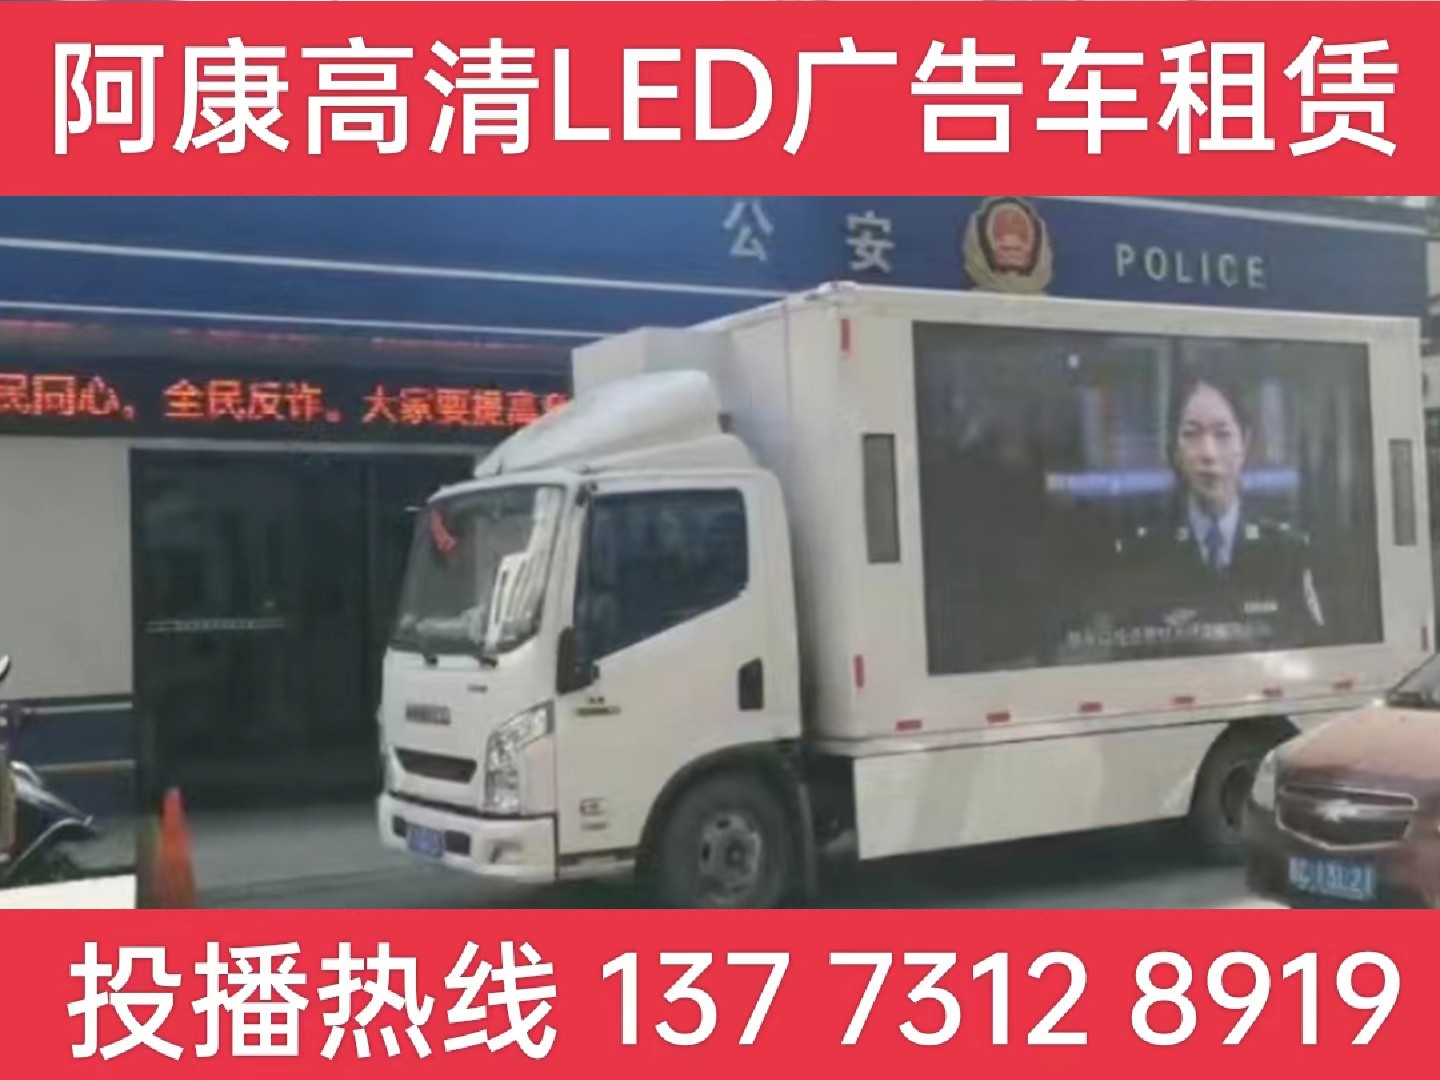 扬中LED广告车租赁-反诈宣传